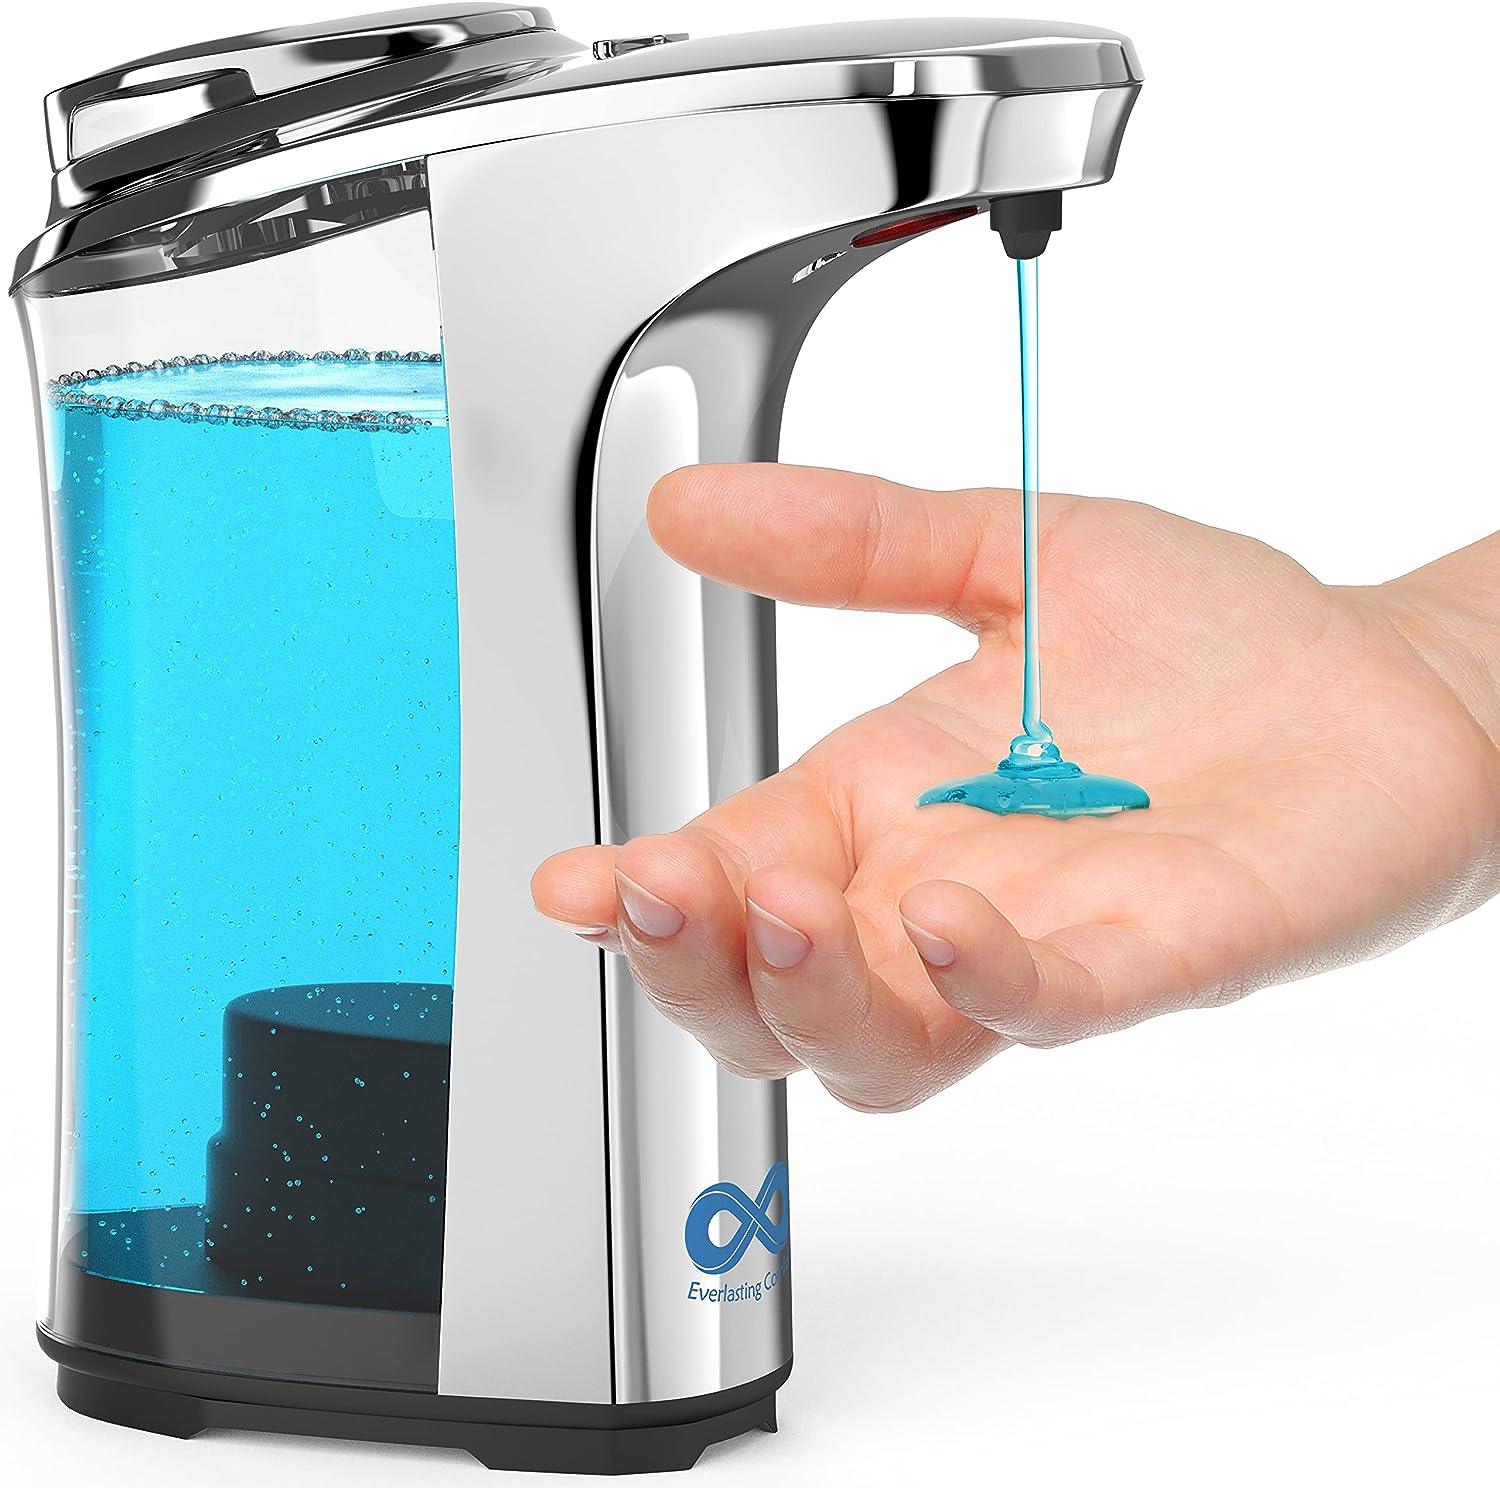 Dispensador de jabón automático fácil de usar lávate las manos 1400 x en un - VIRTUAL MUEBLES